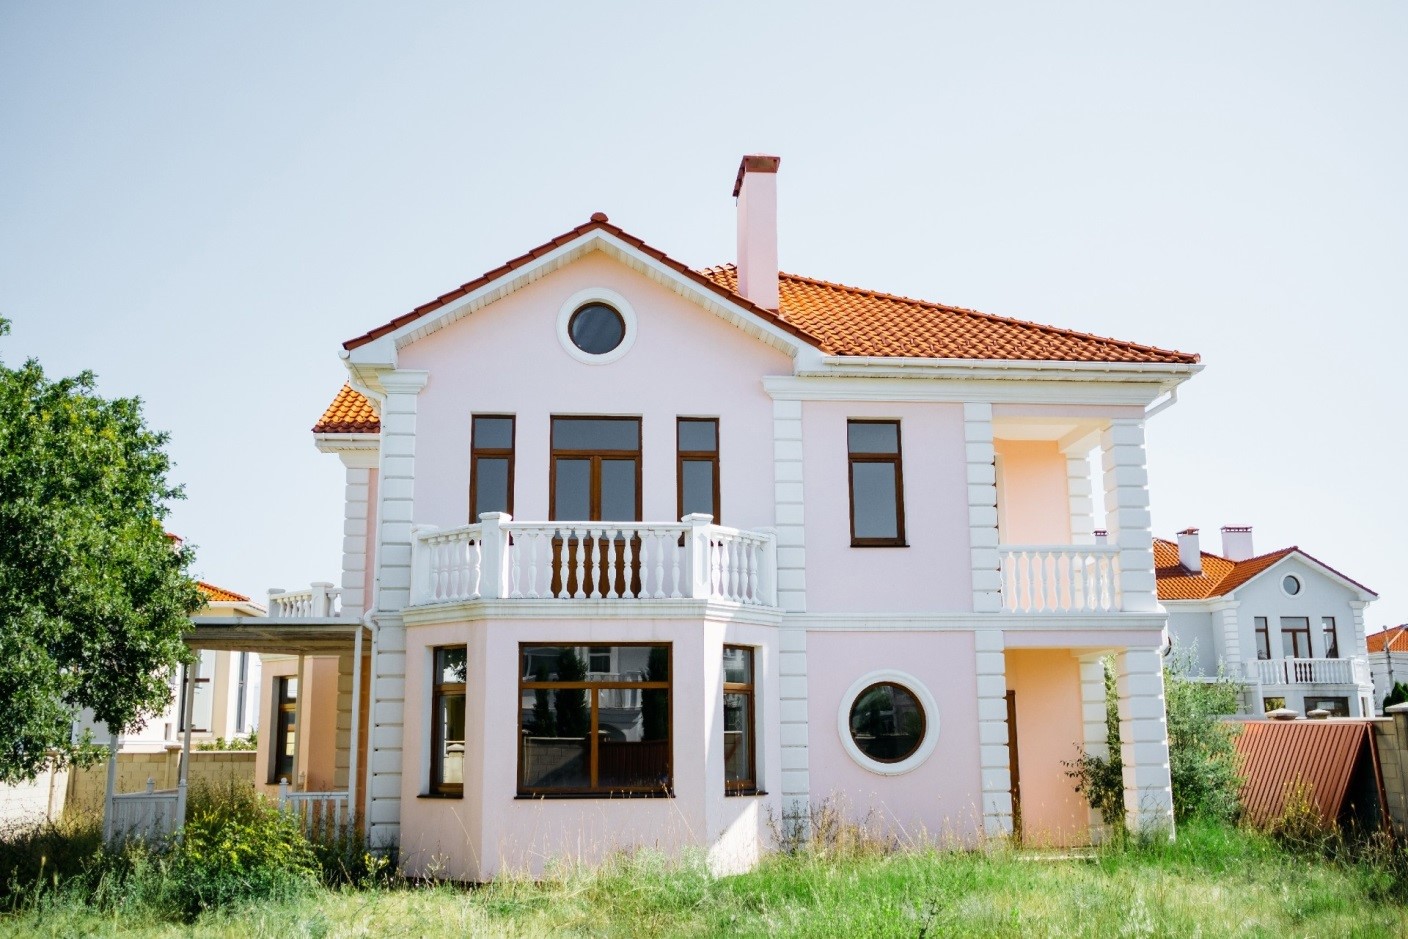 Коттедж в Севастополе через агентство недвижимости: категории объектов, этапы покупки